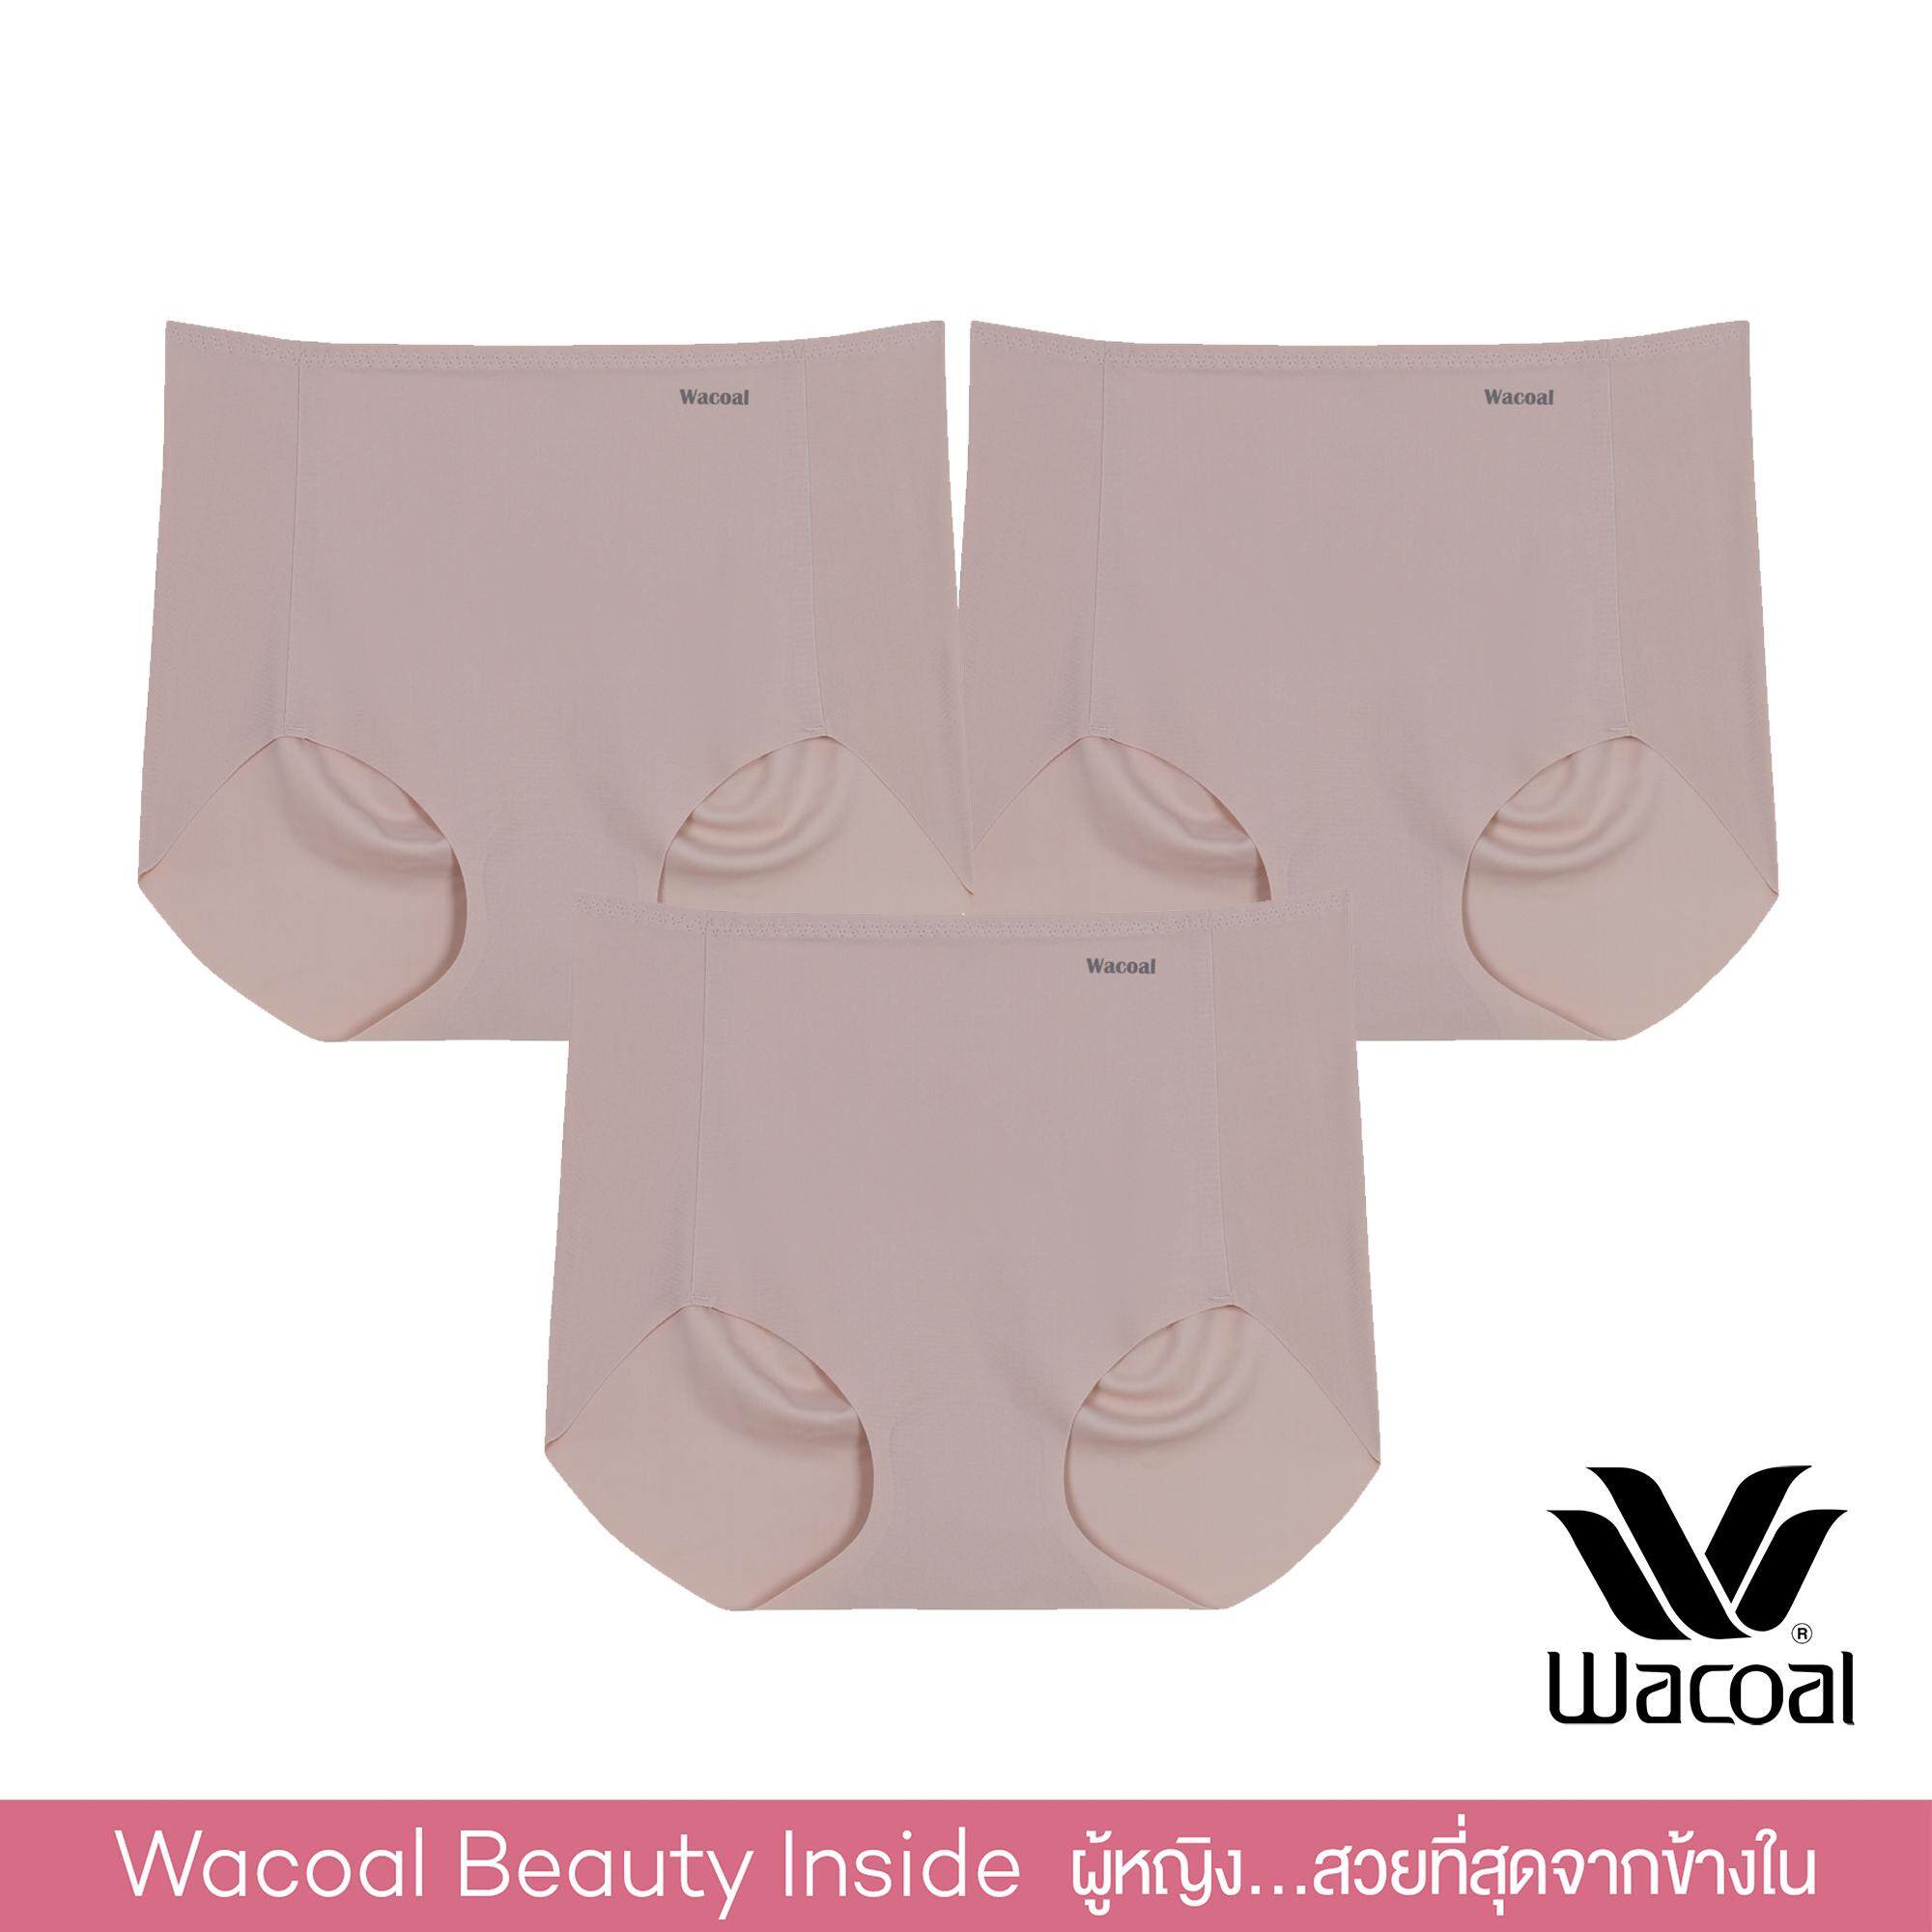 Wacoal Oh My Nudes! Feel Free Panty Set 3 pcs. เซ็ตกางเกงชั้นในไร้รอยตะเข็บ 1 เซ็ต 3 ชิ้น - WU4999